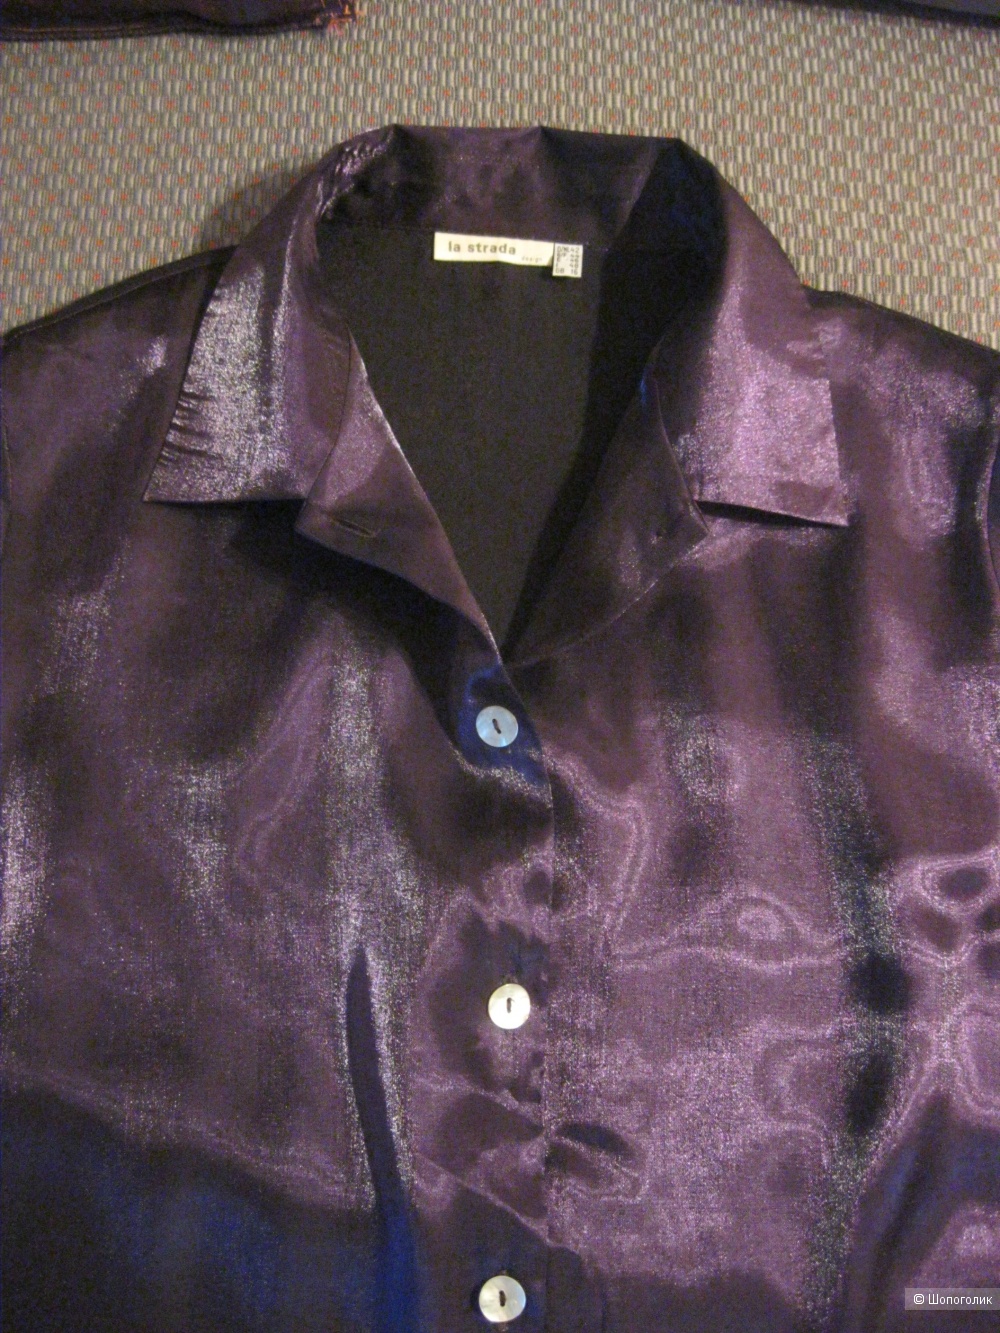 Блуза La strada designe, 50 размер